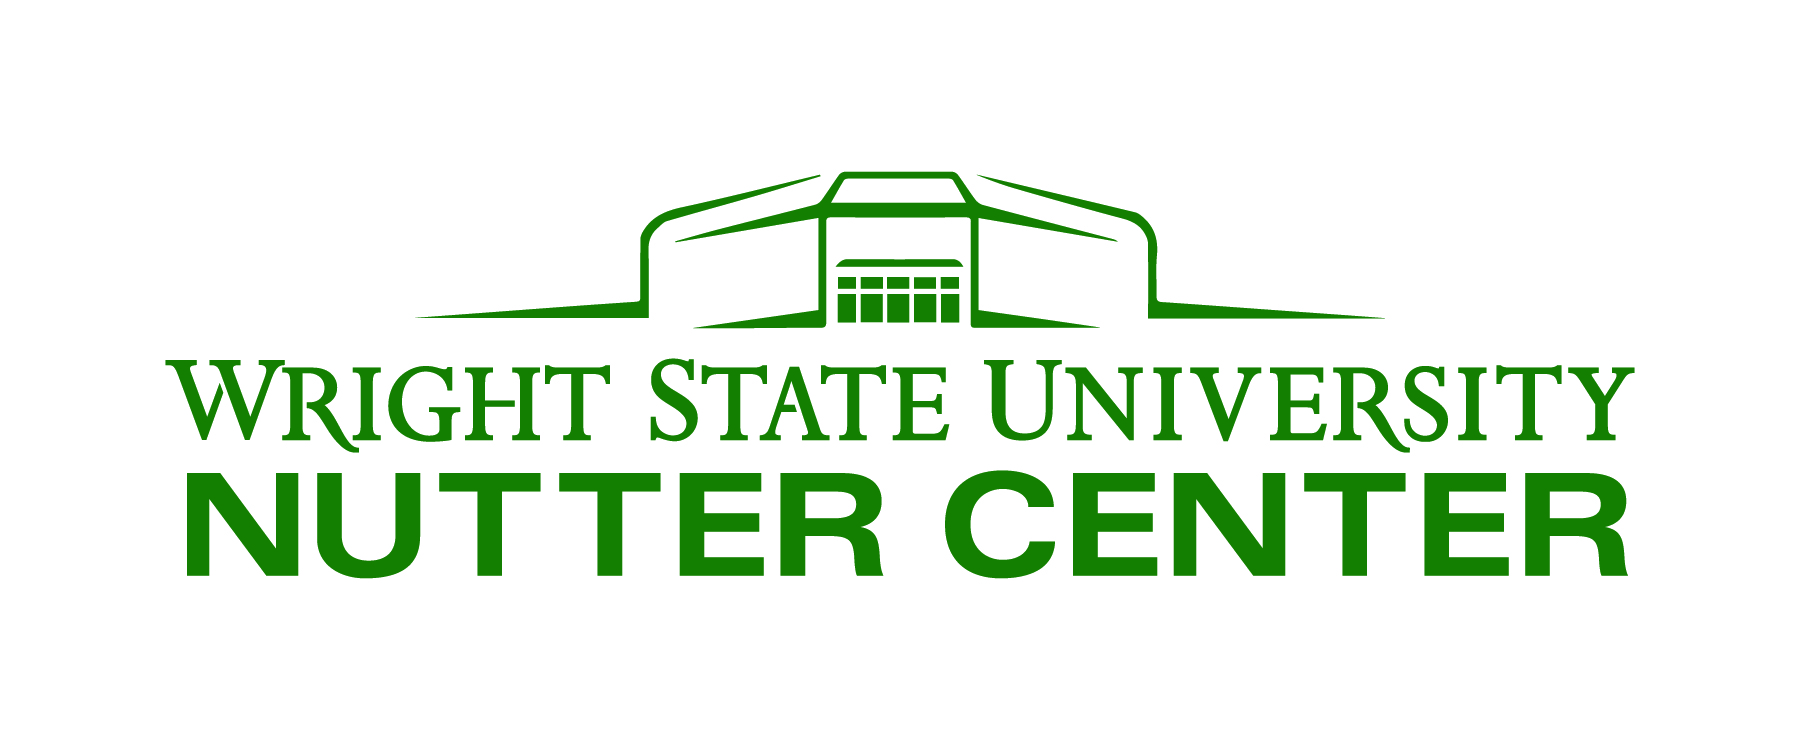 Wright State University Nutter Center logo